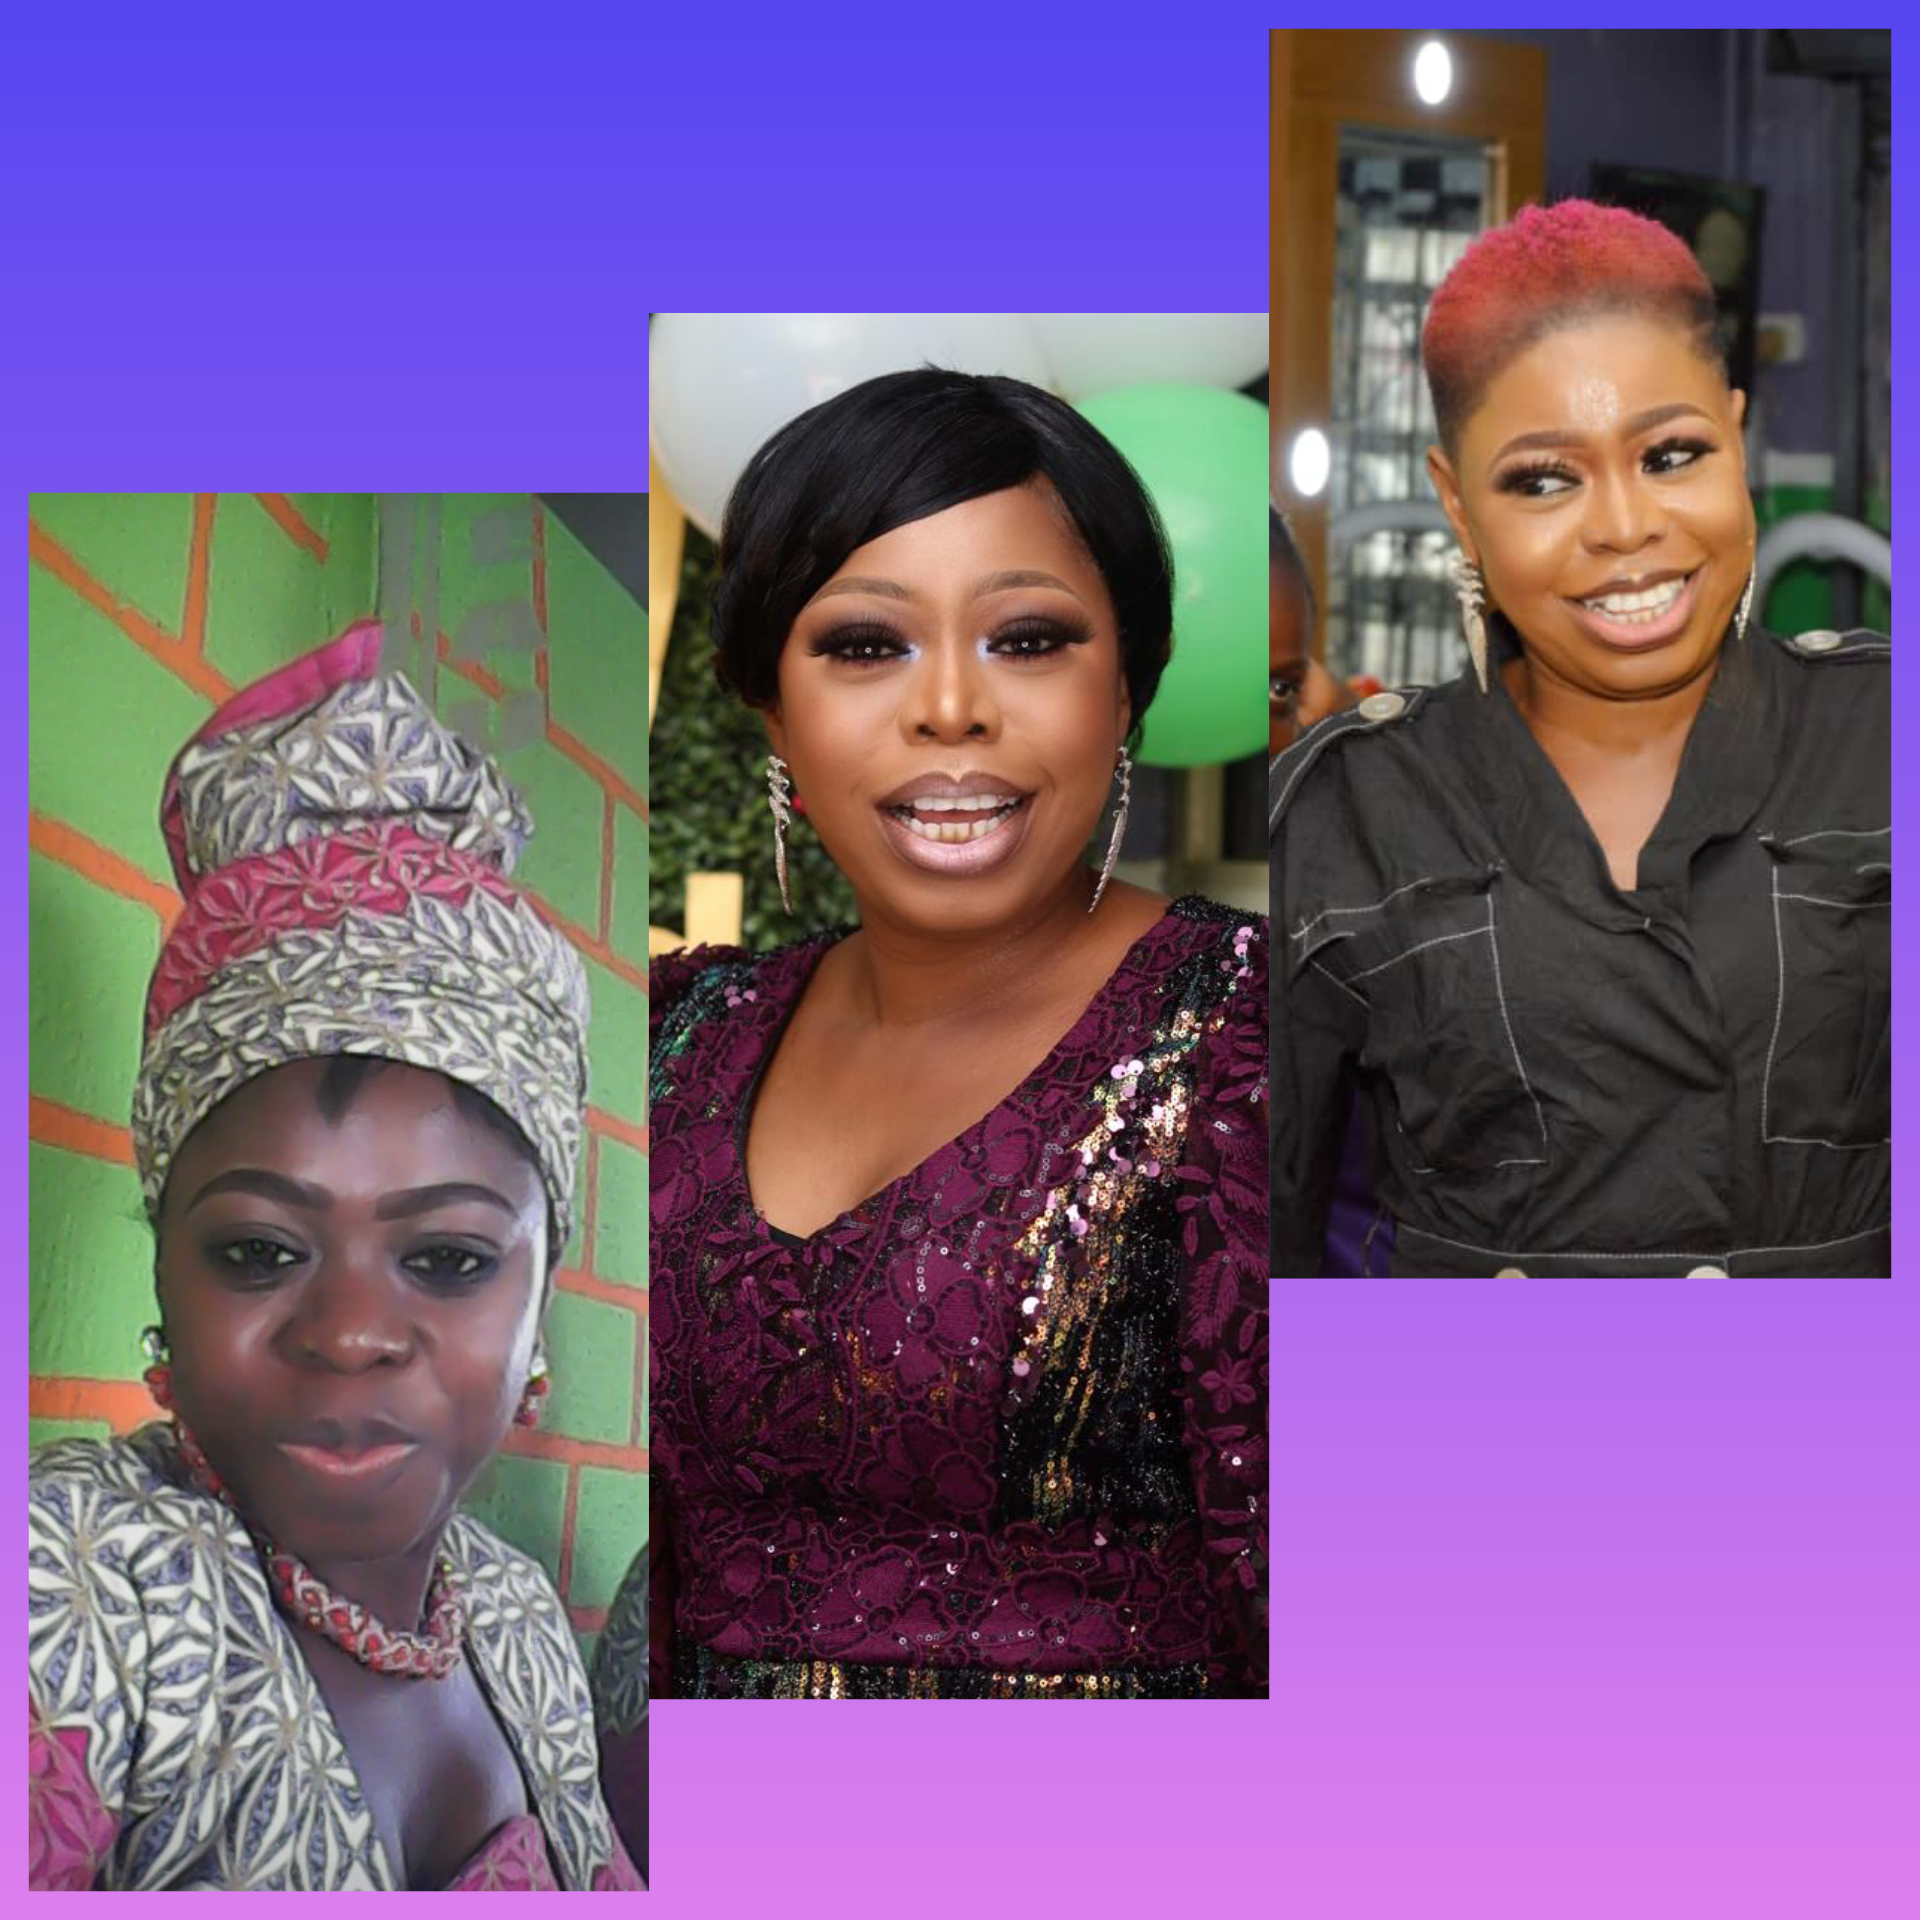 Beauty Endowed Heritage Nigeria provider